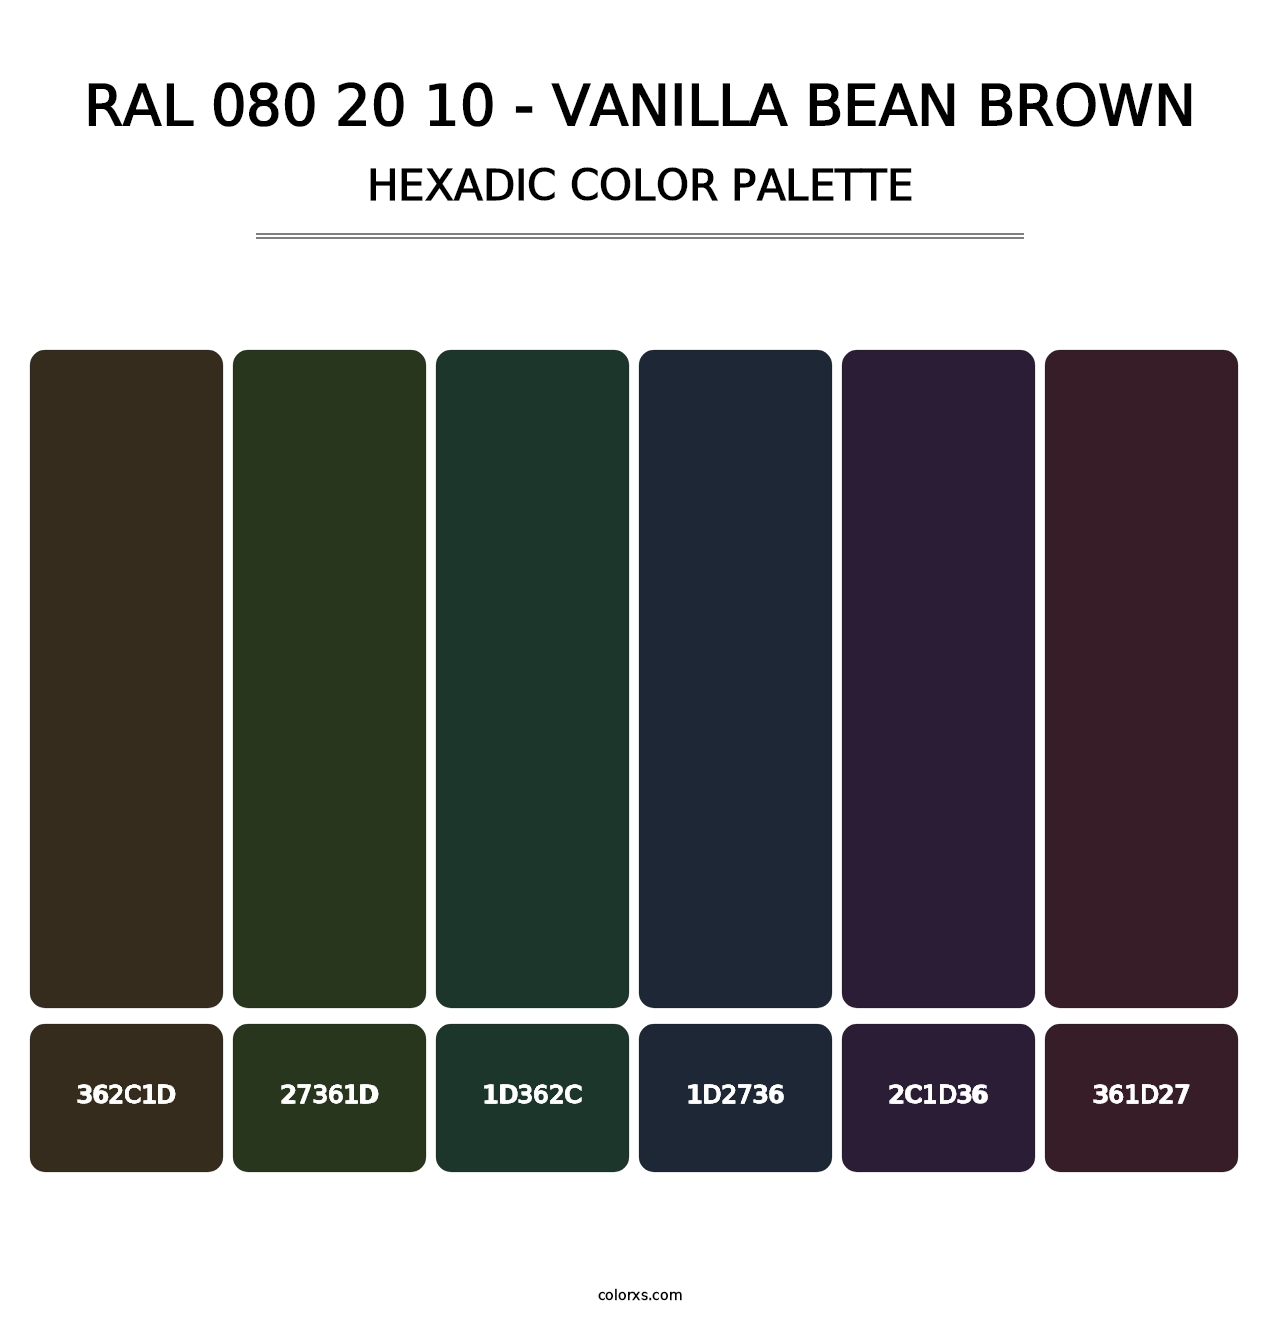 RAL 080 20 10 - Vanilla Bean Brown - Hexadic Color Palette